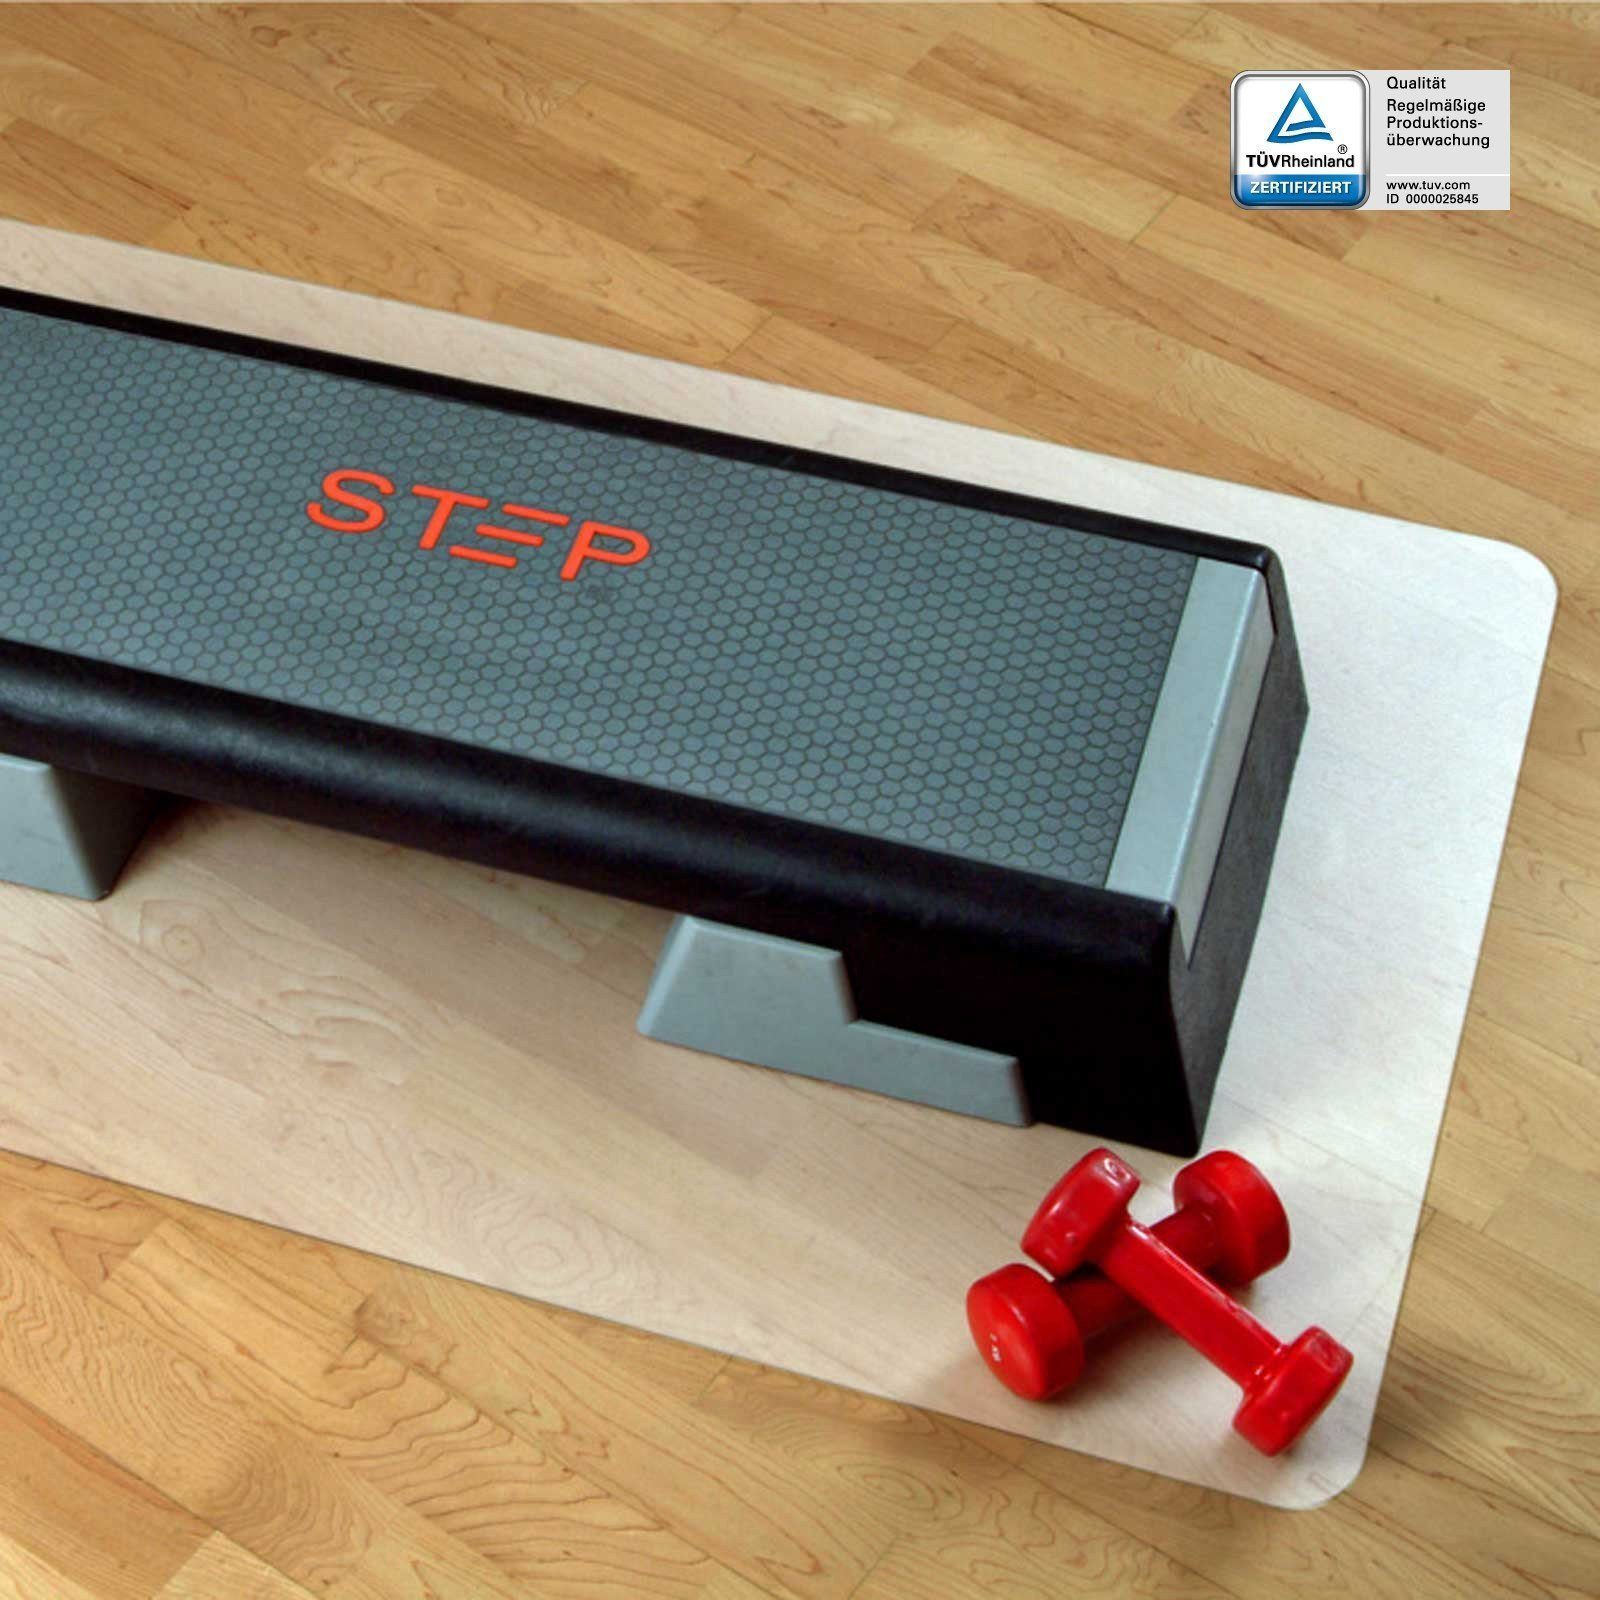 Karat Bodenmatte »Unterlegmatte für Fitnessgeräte, Bodenschutz, rechteckig,  100% Polypropylen«, halbtransparent online kaufen | OTTO